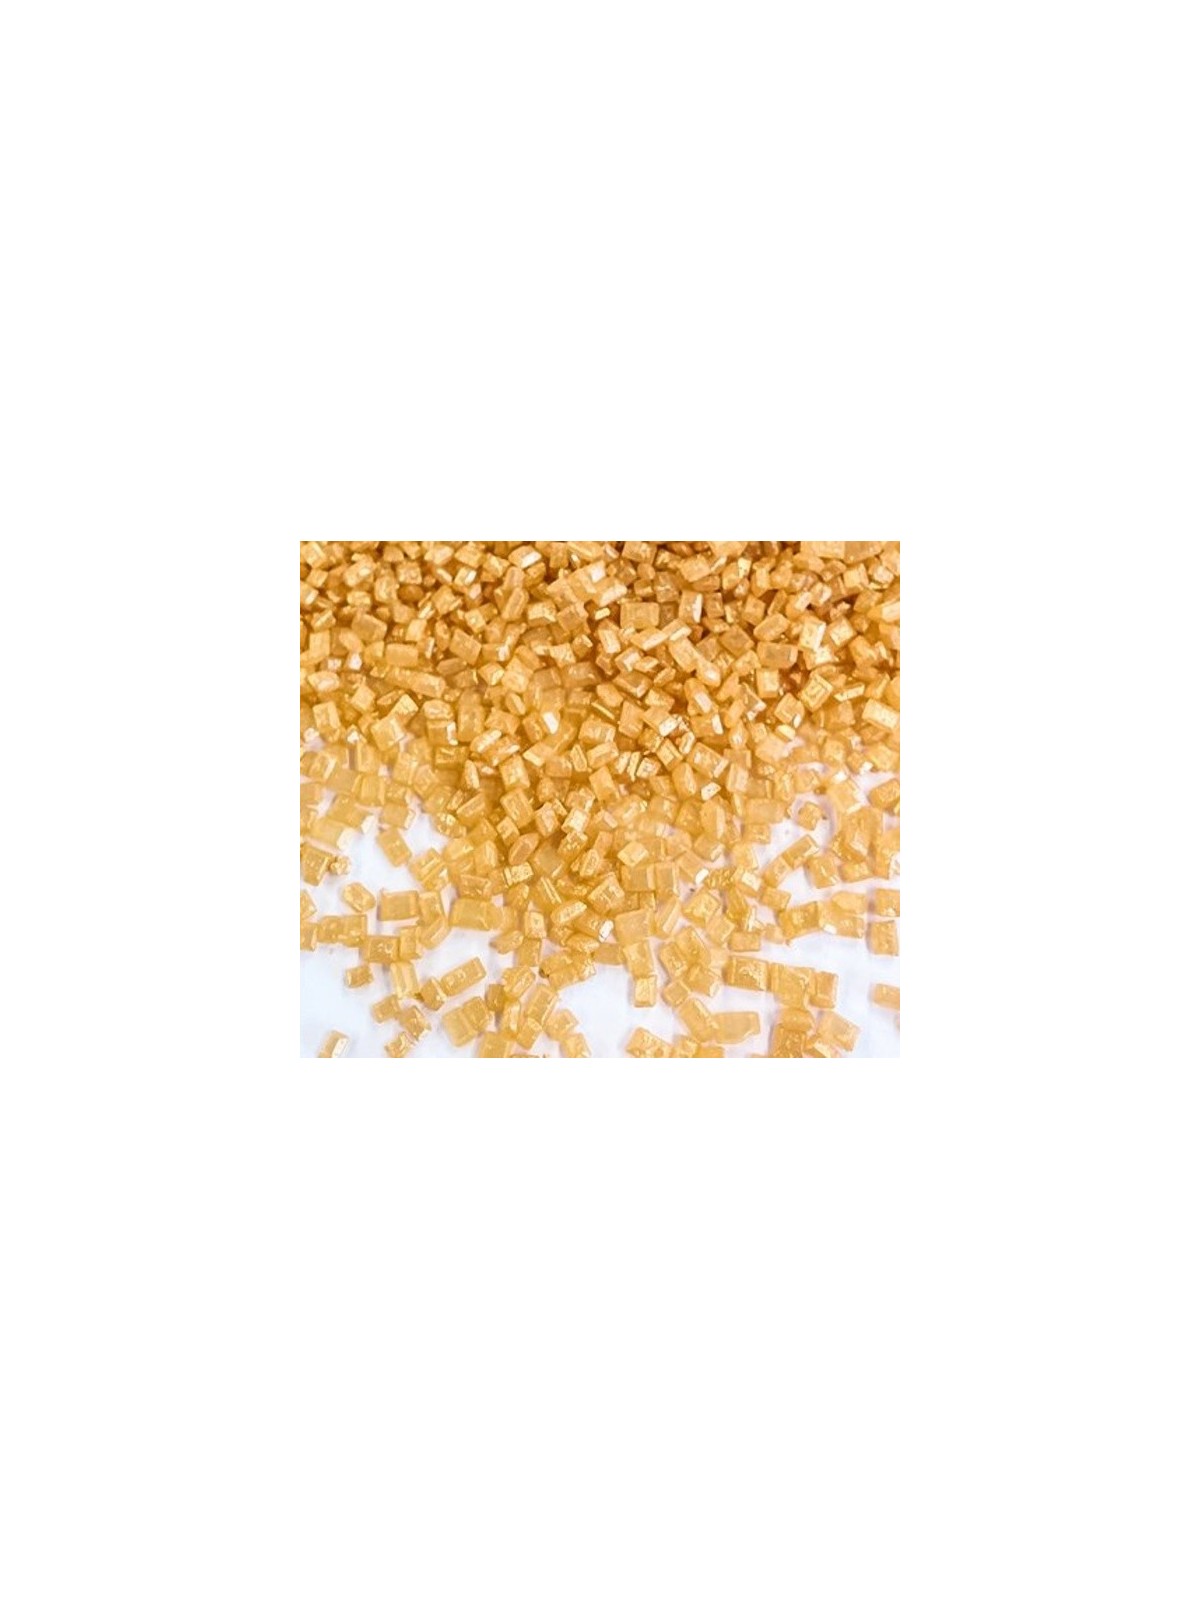 Sugar crystals Gold medium -  100g